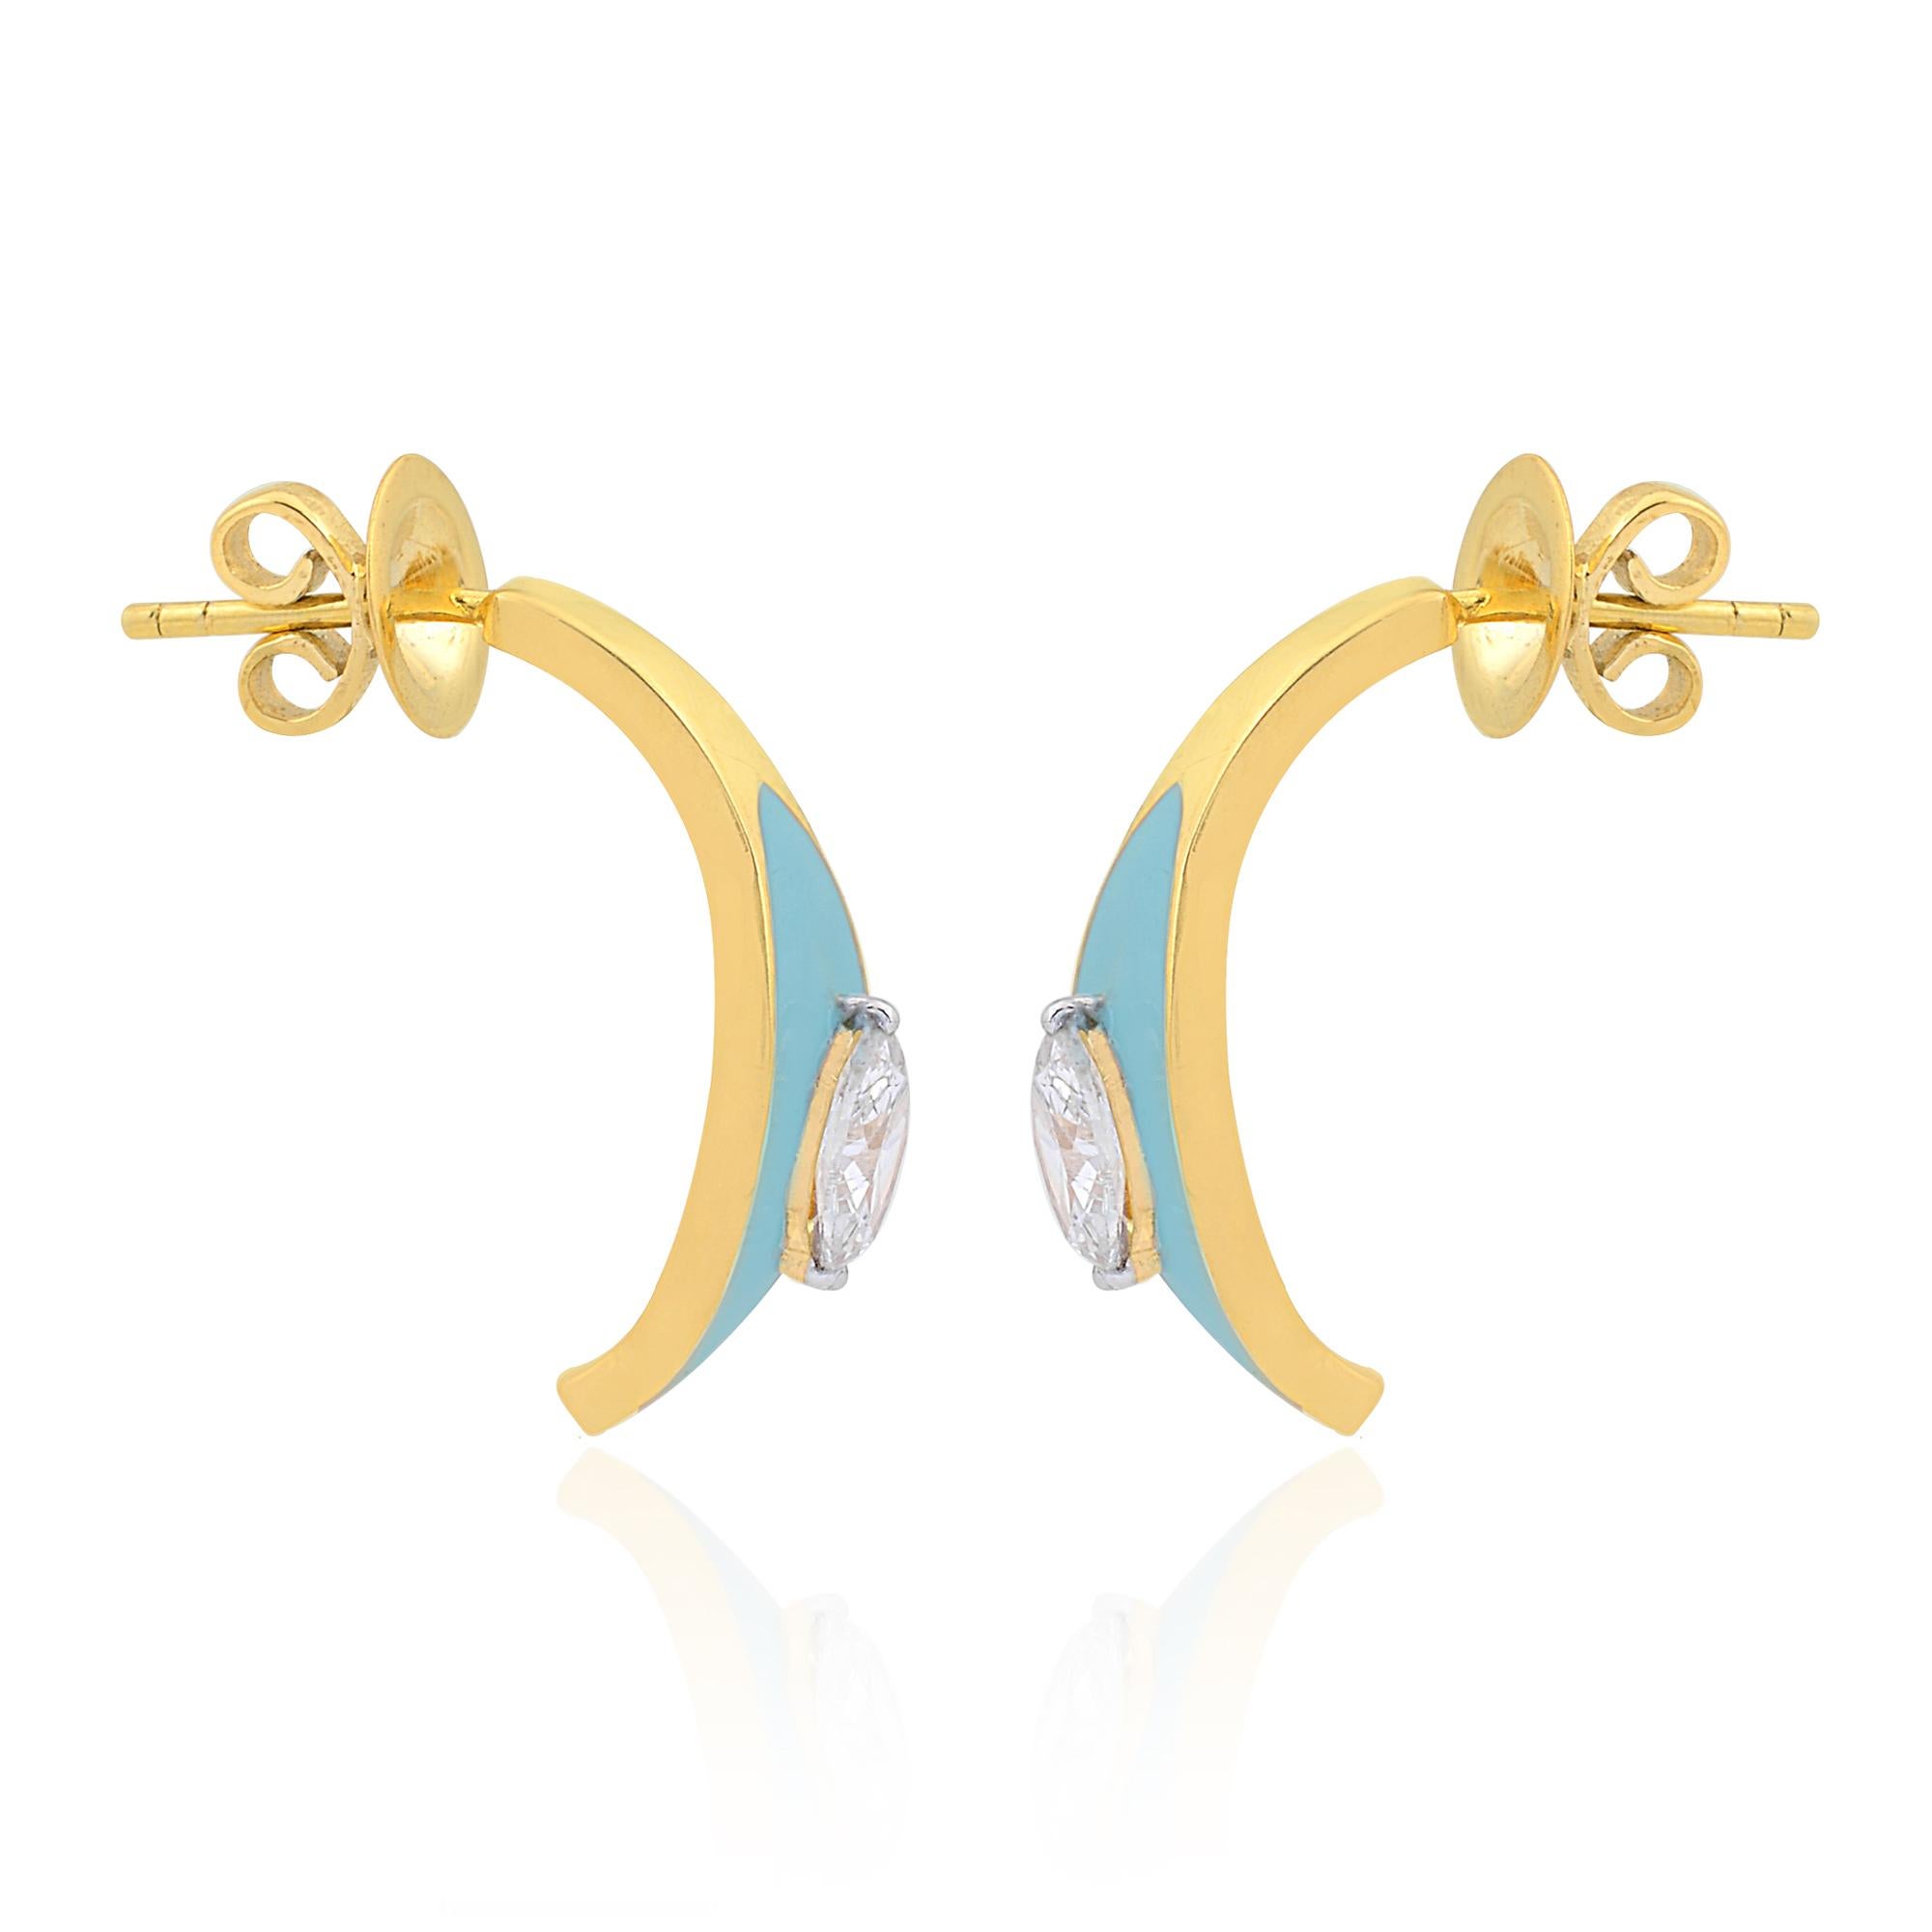 Schmücken Sie sich mit Eleganz und Raffinesse mit diesen atemberaubenden 0,75 Karat Marquise Diamond Turquoise Enamel Half Hoop Earrings in 14k Gelbgold. Diese mit viel Liebe zum Detail gefertigten Ohrringe vereinen klassischen Charme mit modernem